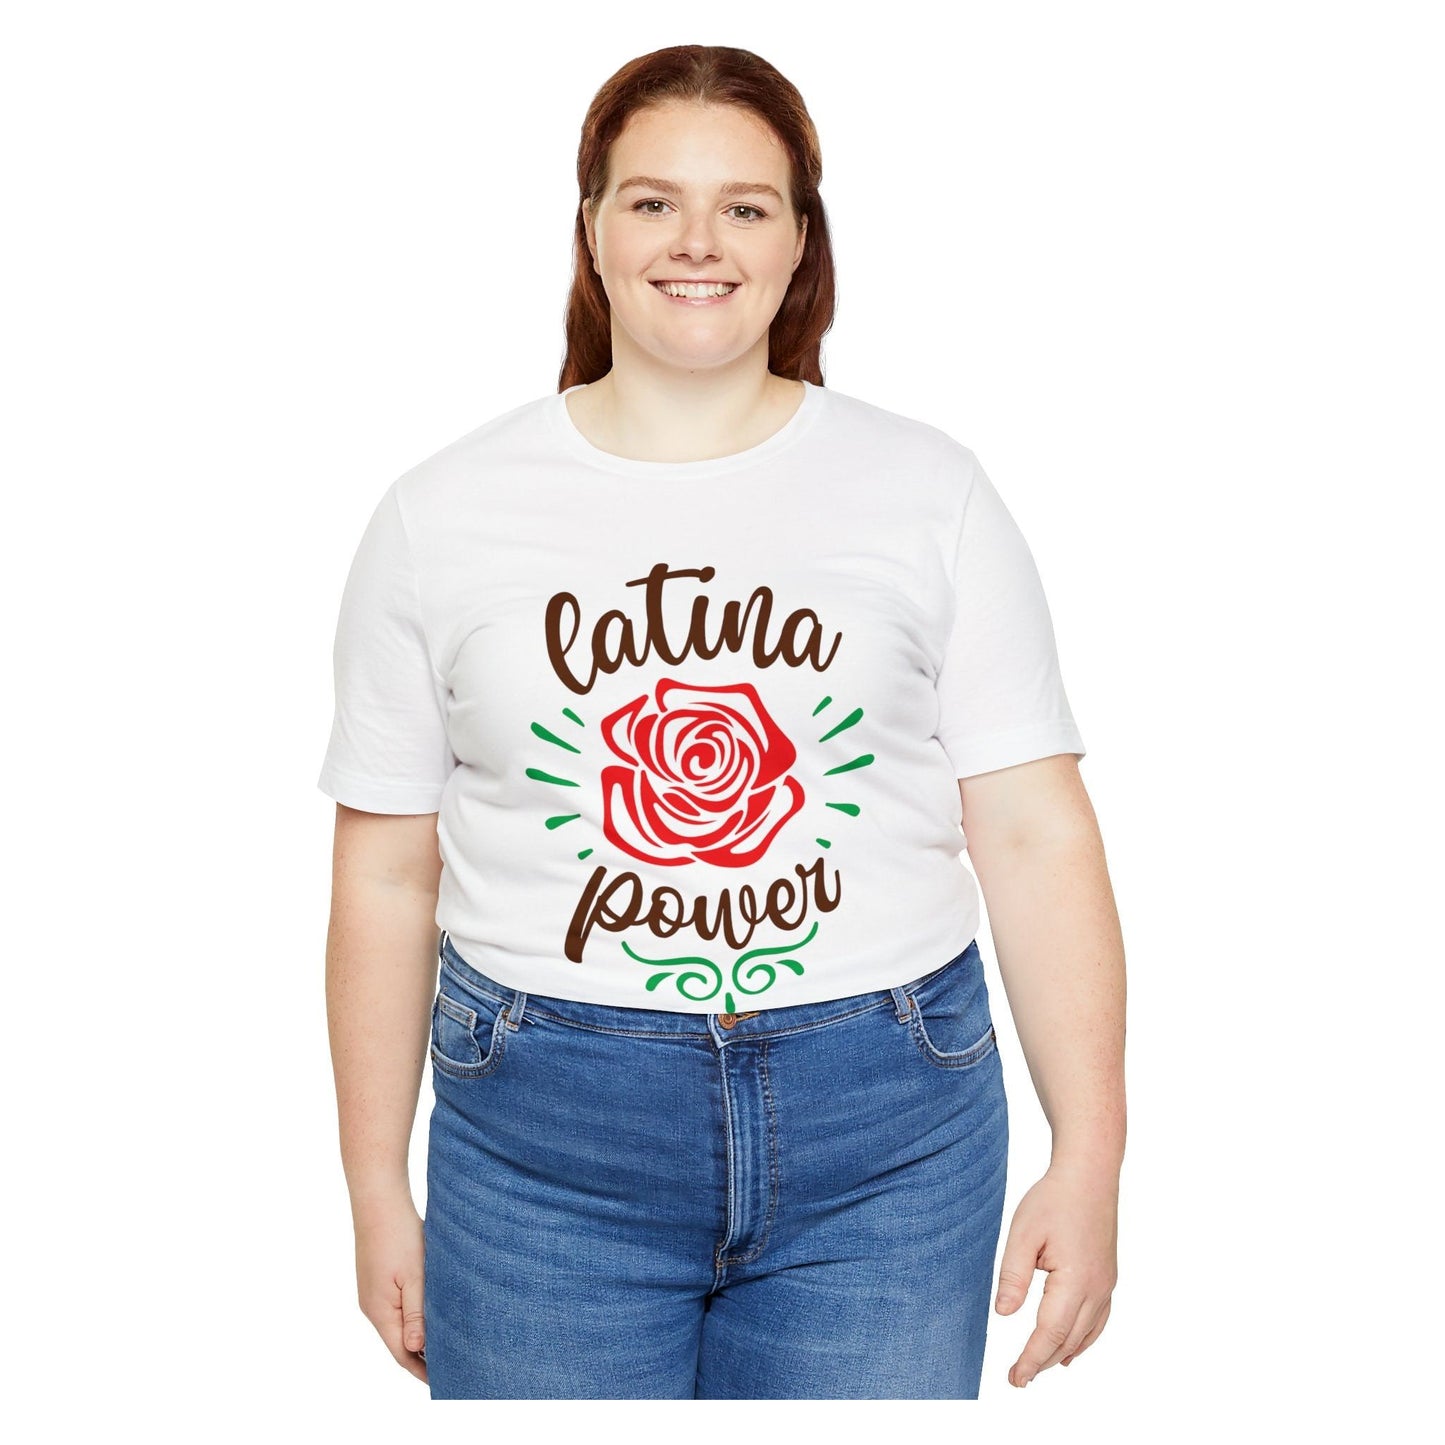 T-shirt - Latina Power